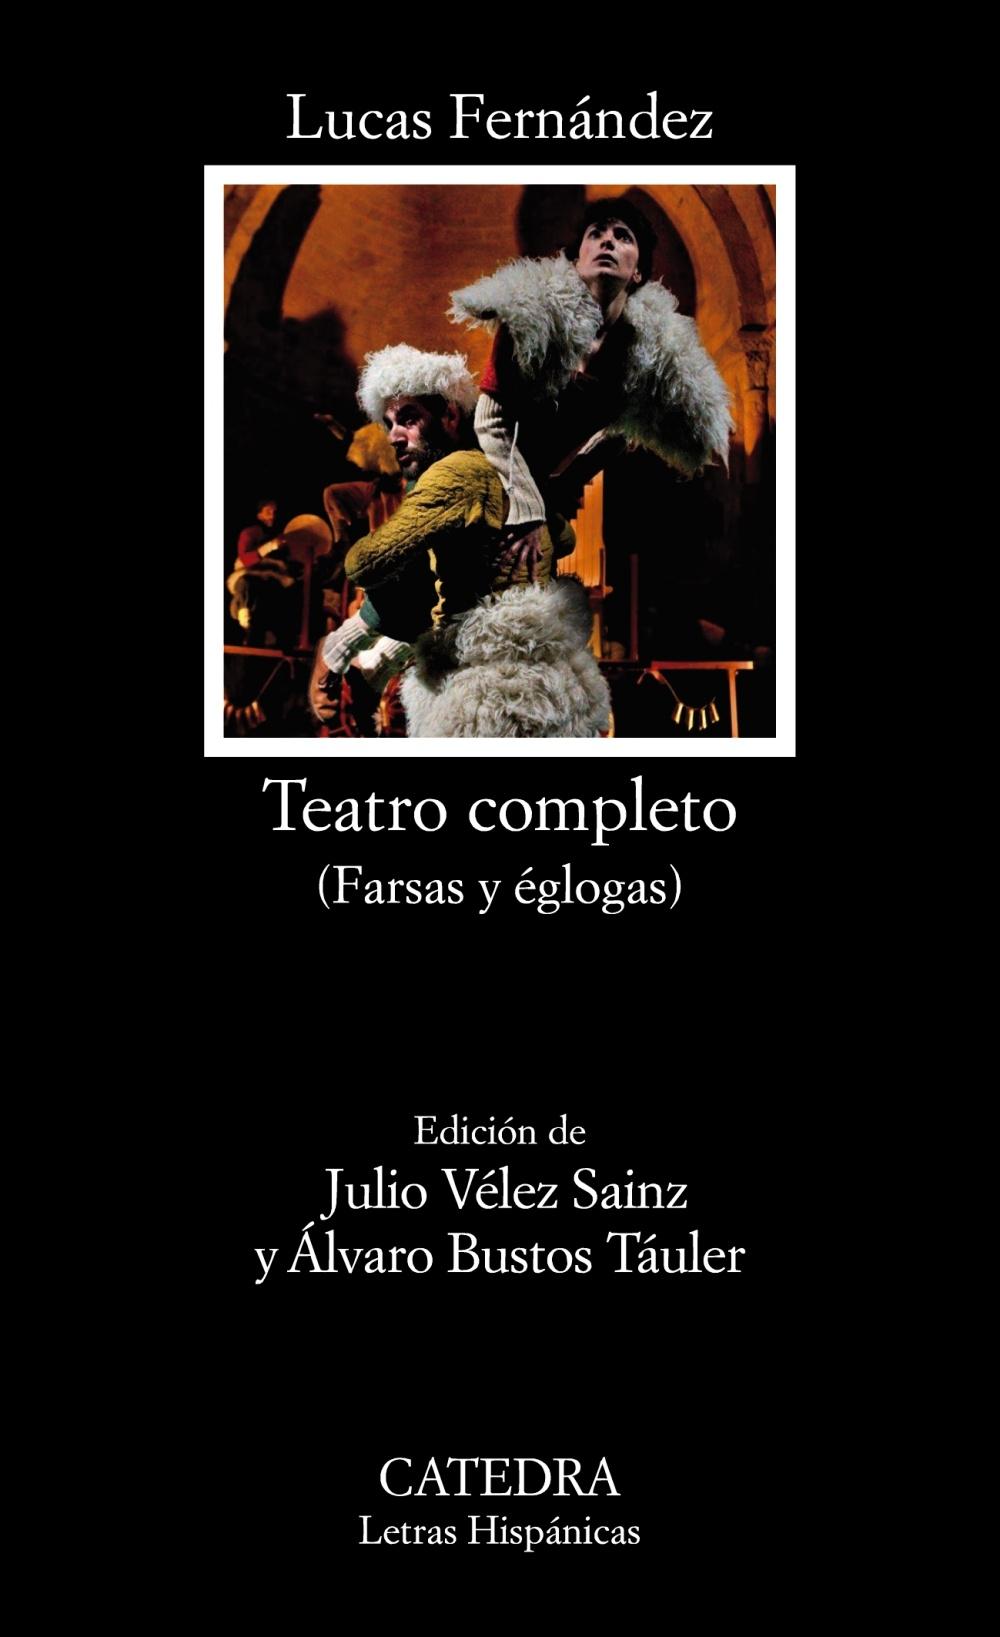 Teatro completo "(Farsas y églogas al modo y estilo pastoril y castellano)"